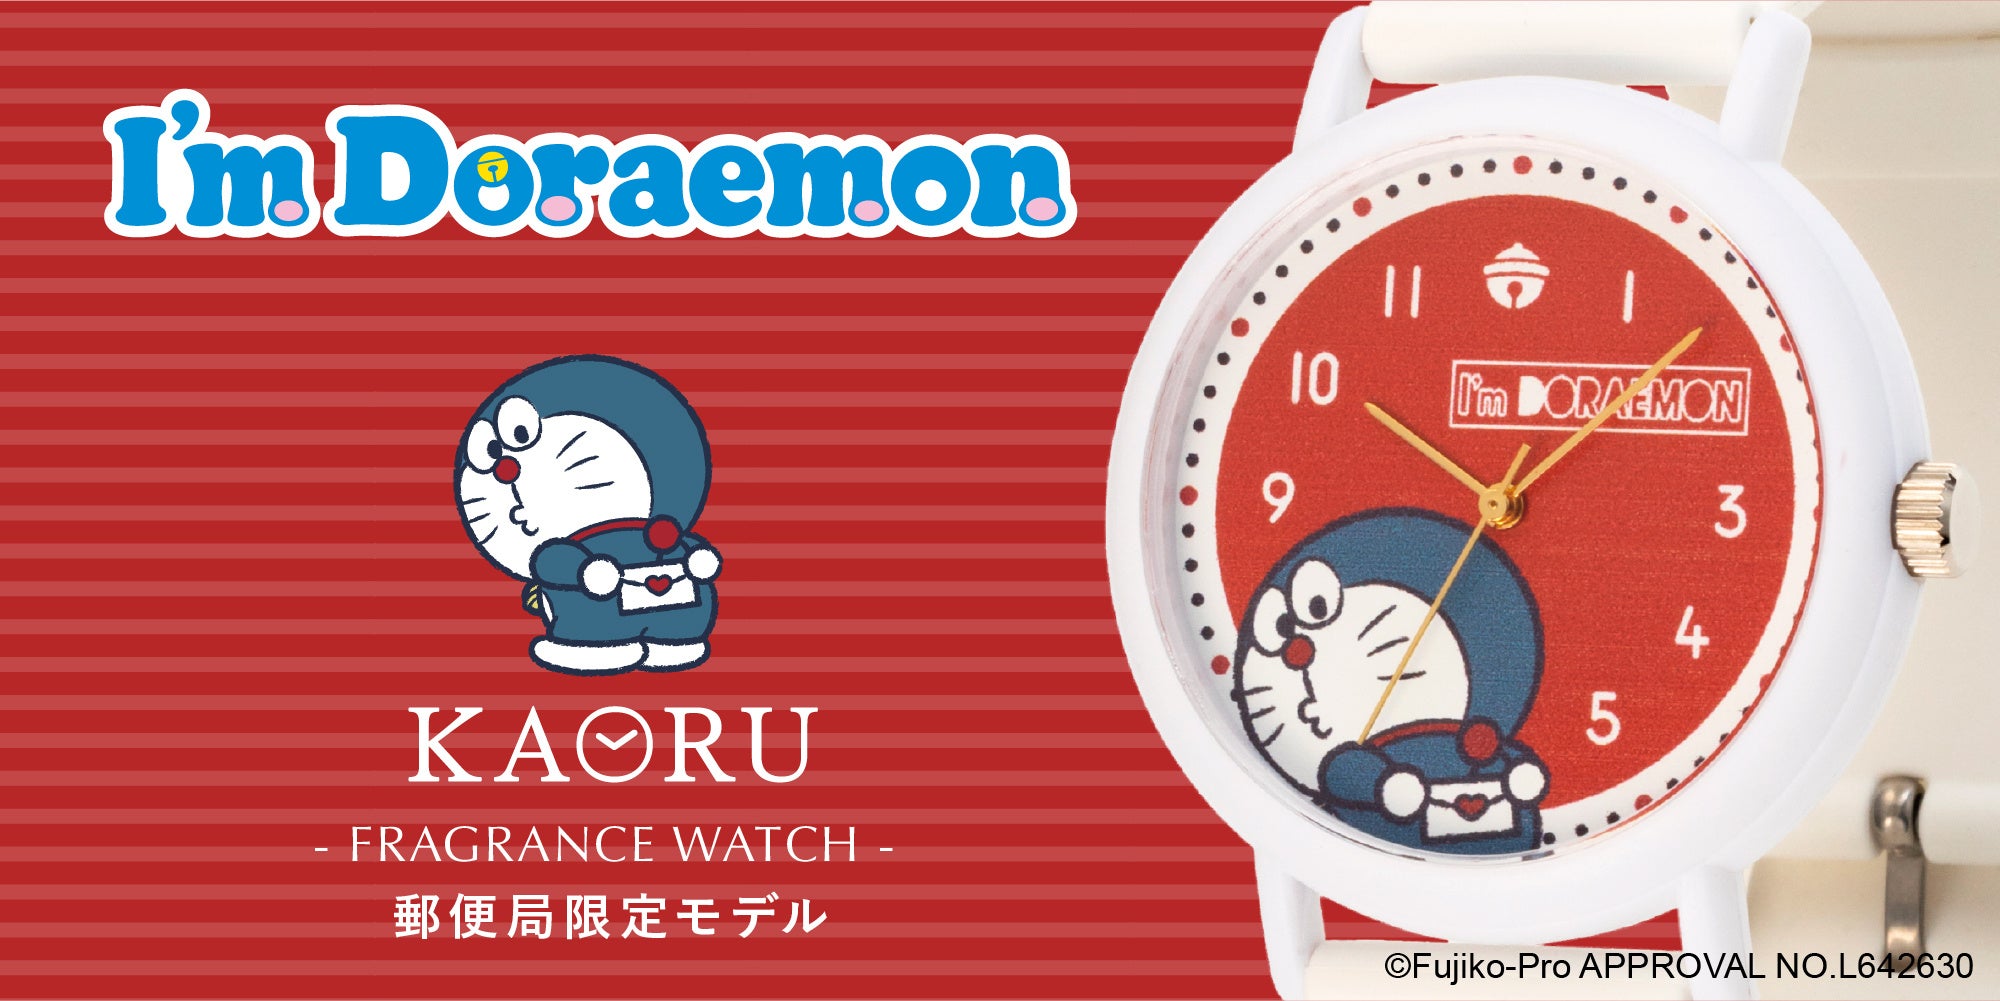 香りがするウォッチブランド” KAORU” から「I' m Doraemon」郵便局限定